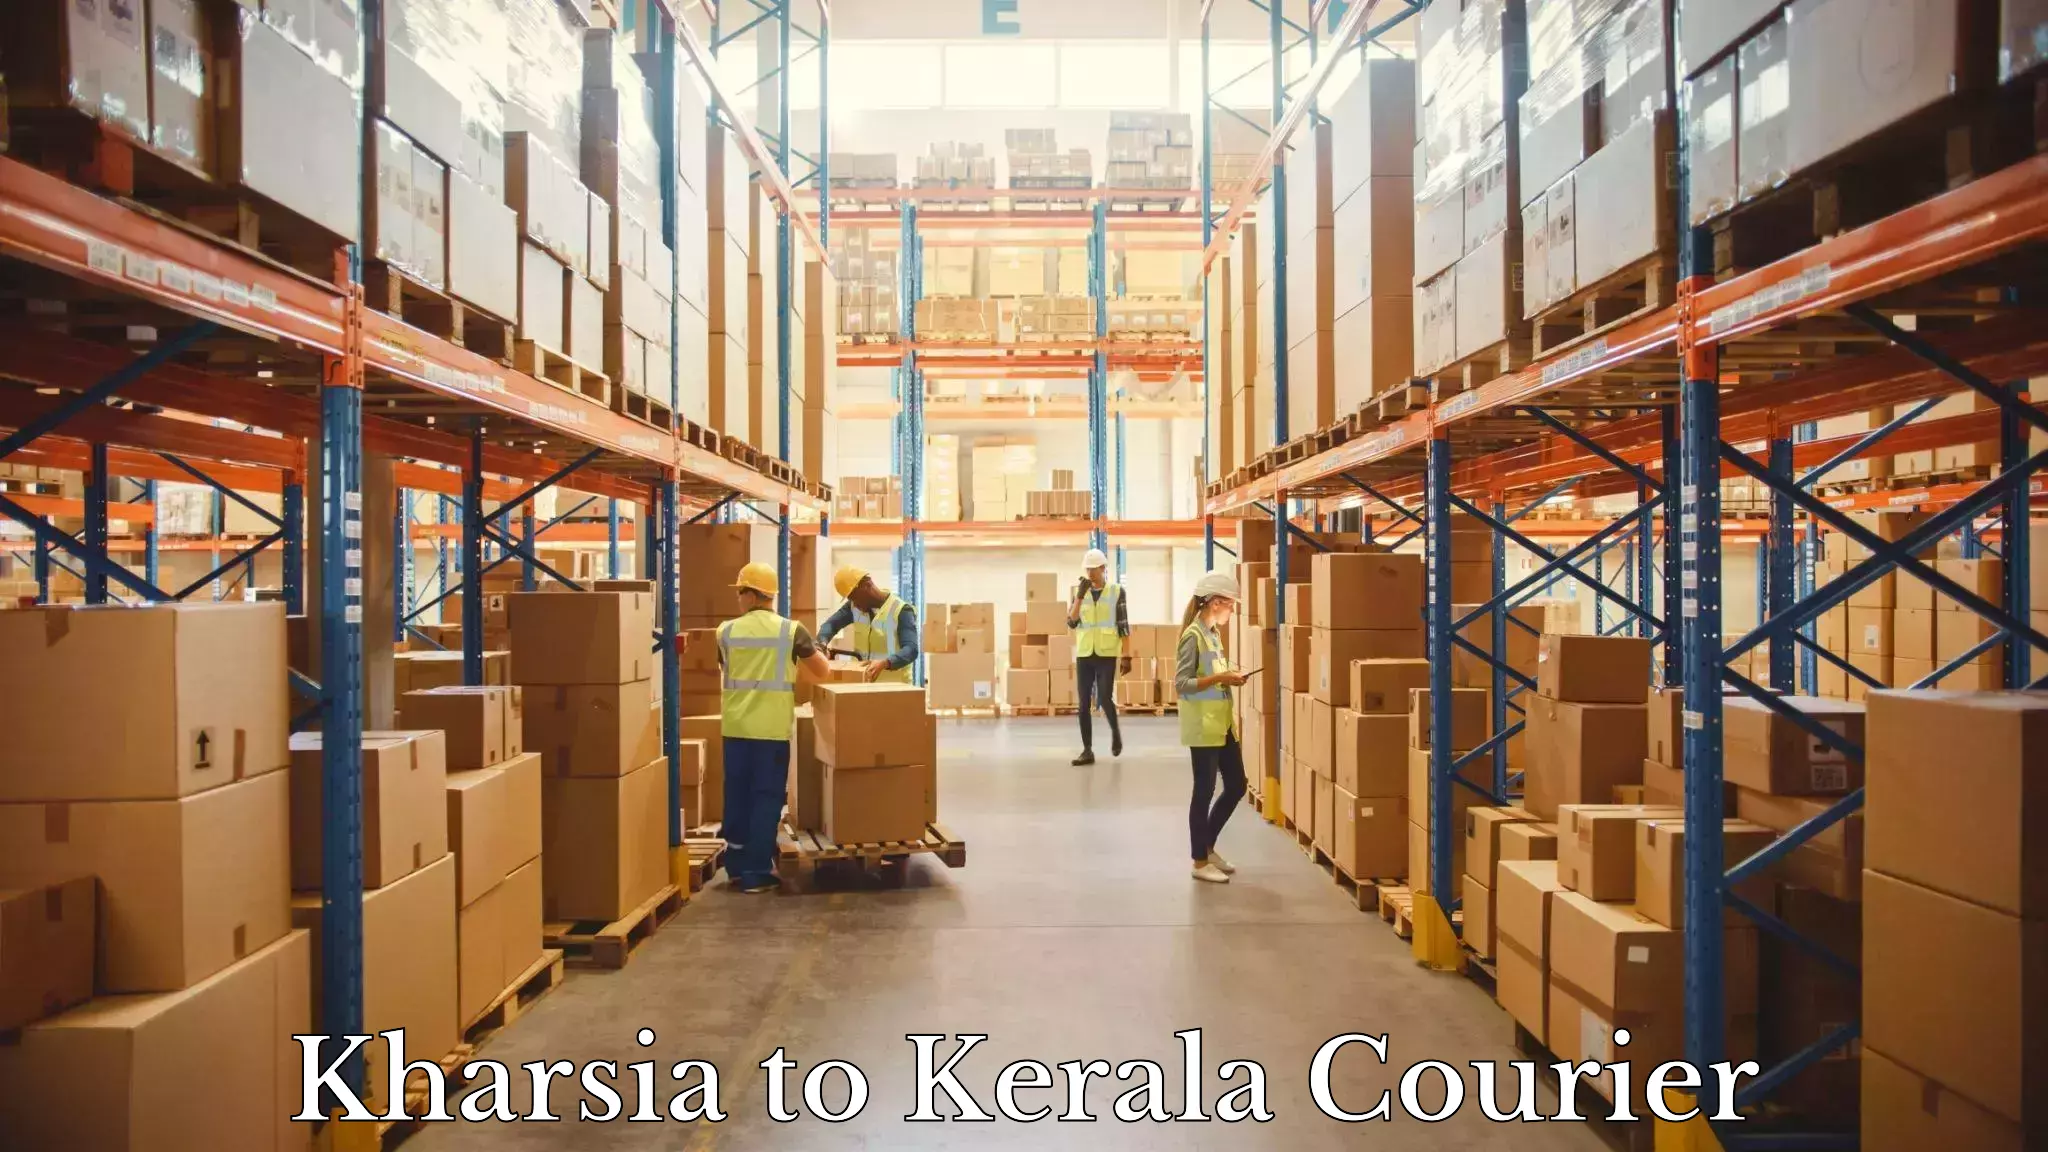 Nationwide shipping capabilities Kharsia to Cochin Port Kochi